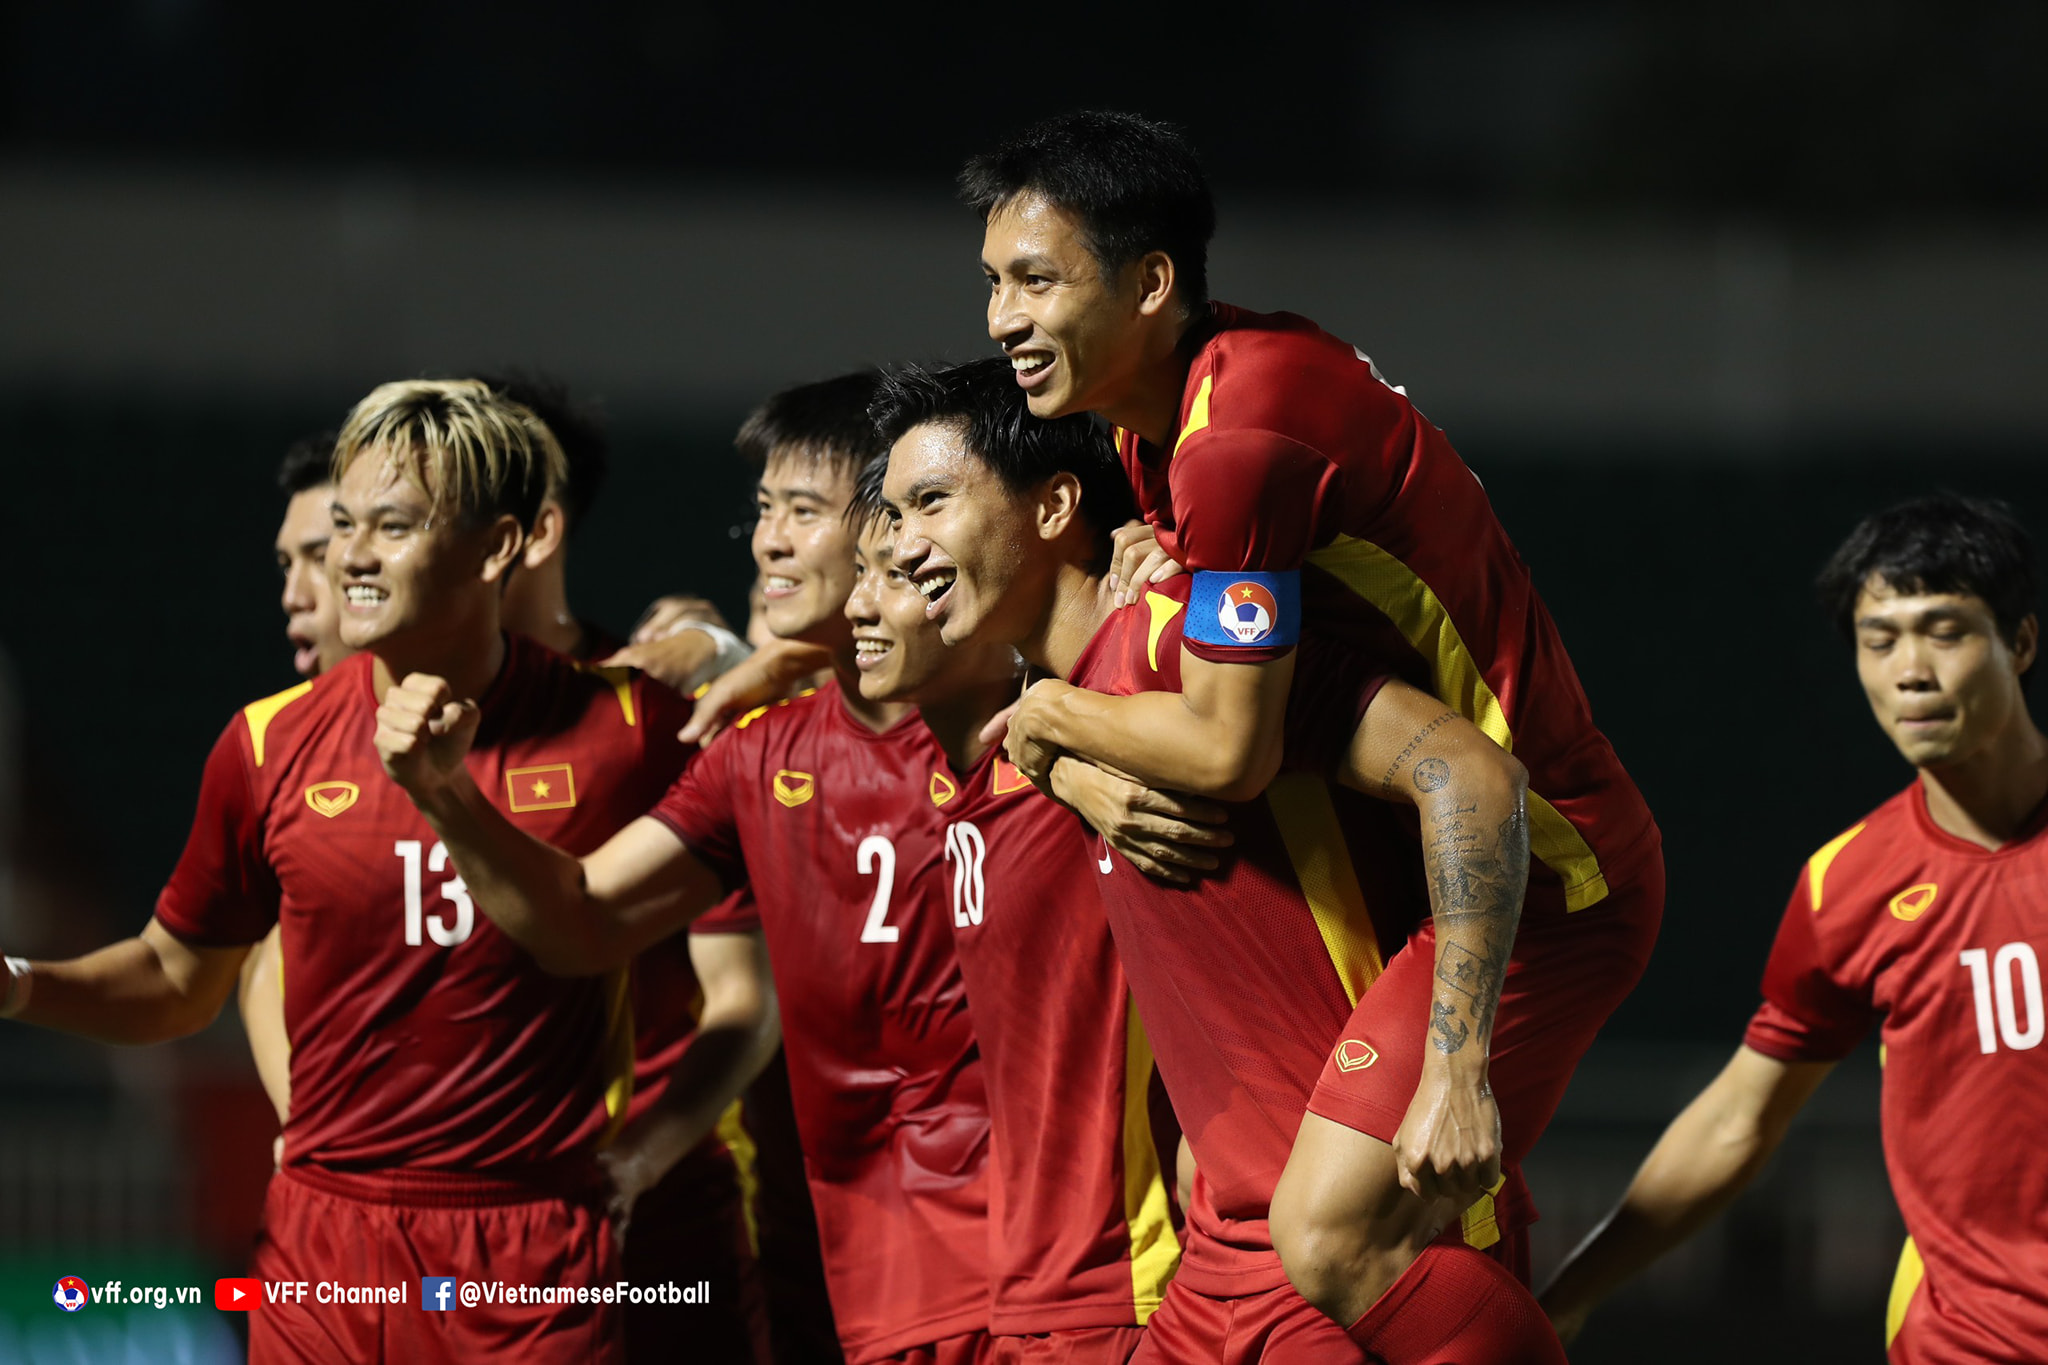 Thắng ĐT Ấn Độ 3-0, ĐT Việt Nam vô địch Giải giao hữu quốc tế – Hưng Thịnh 2022